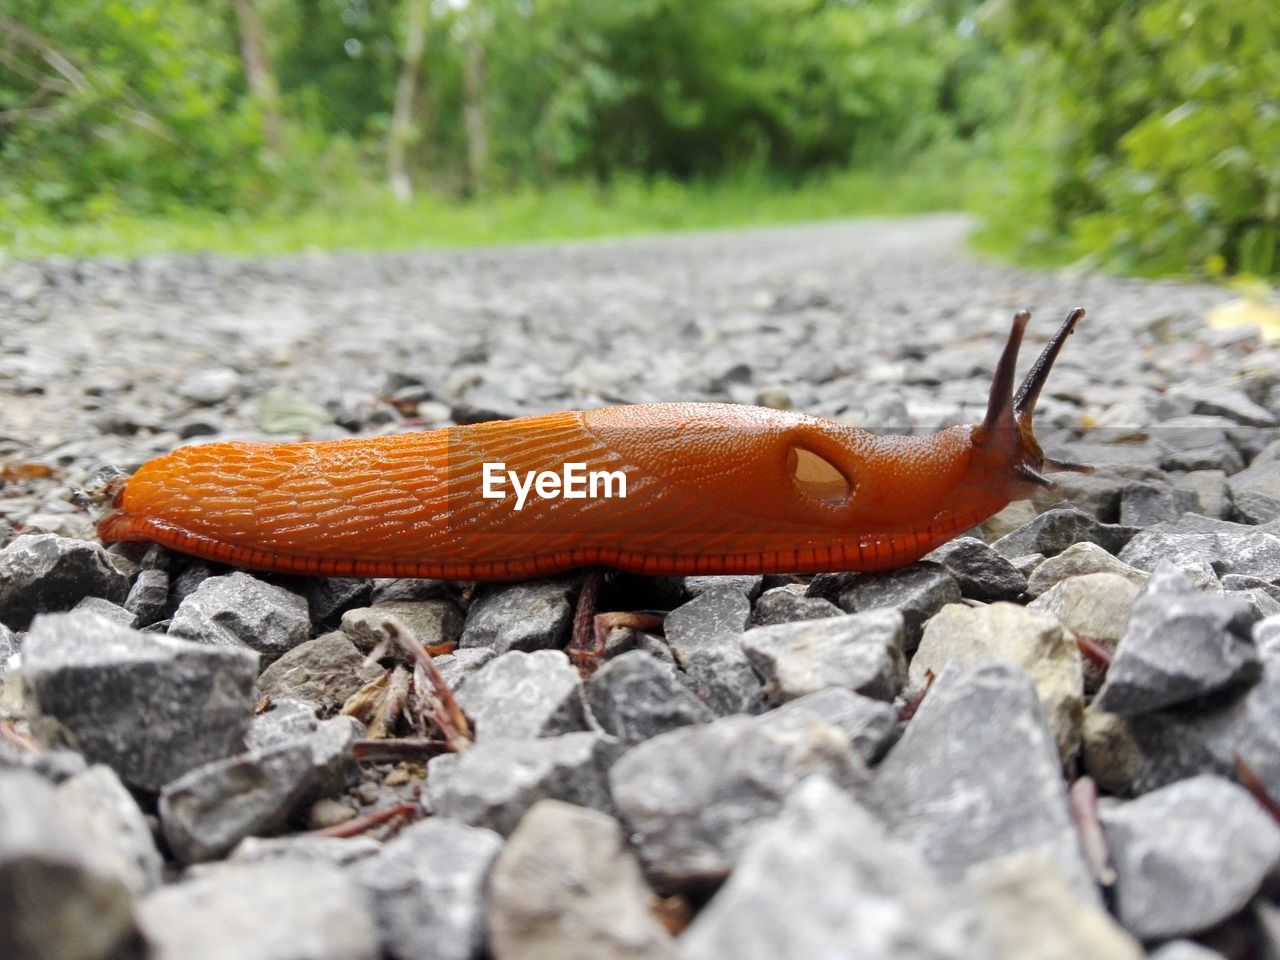 Close-up of slug on stones